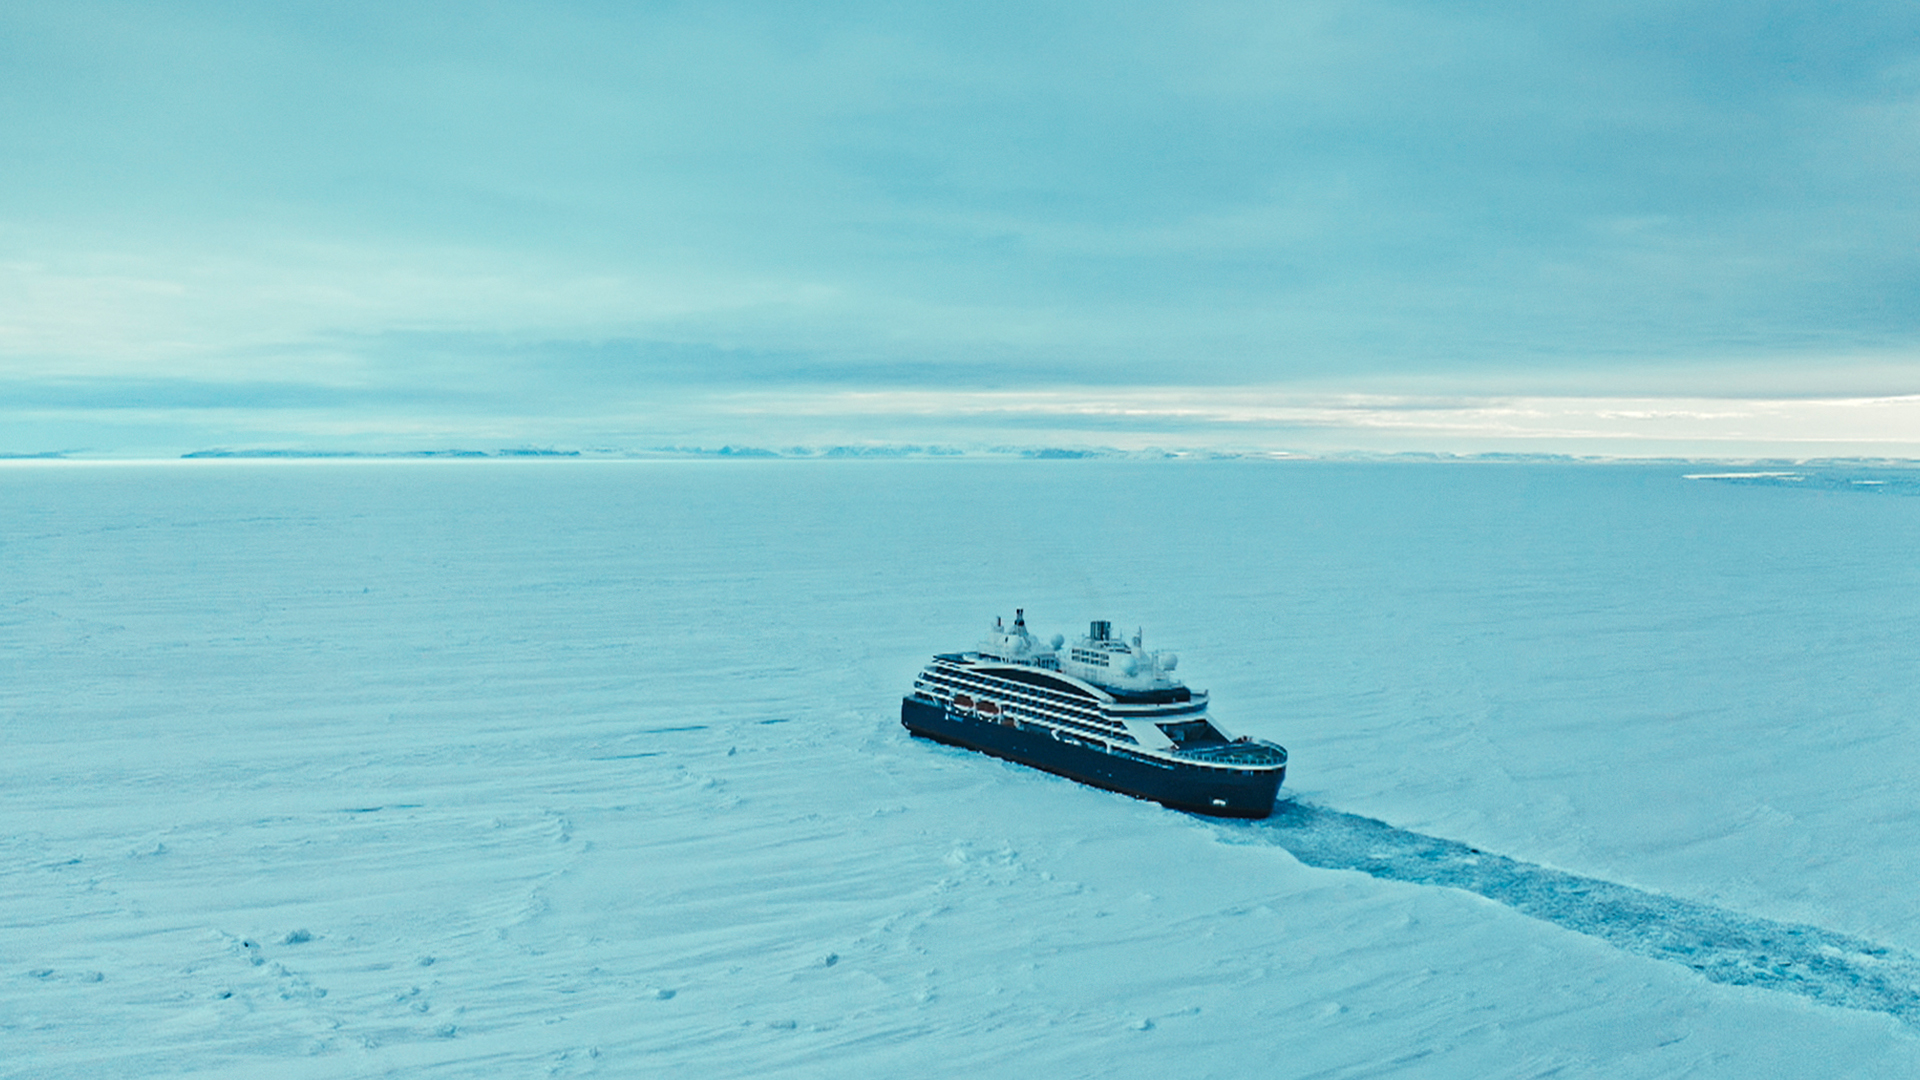 سفينة القائد شاركو في القارة القطبية الجنوبية. هذه... [Photo of the day - يونيو 2022]